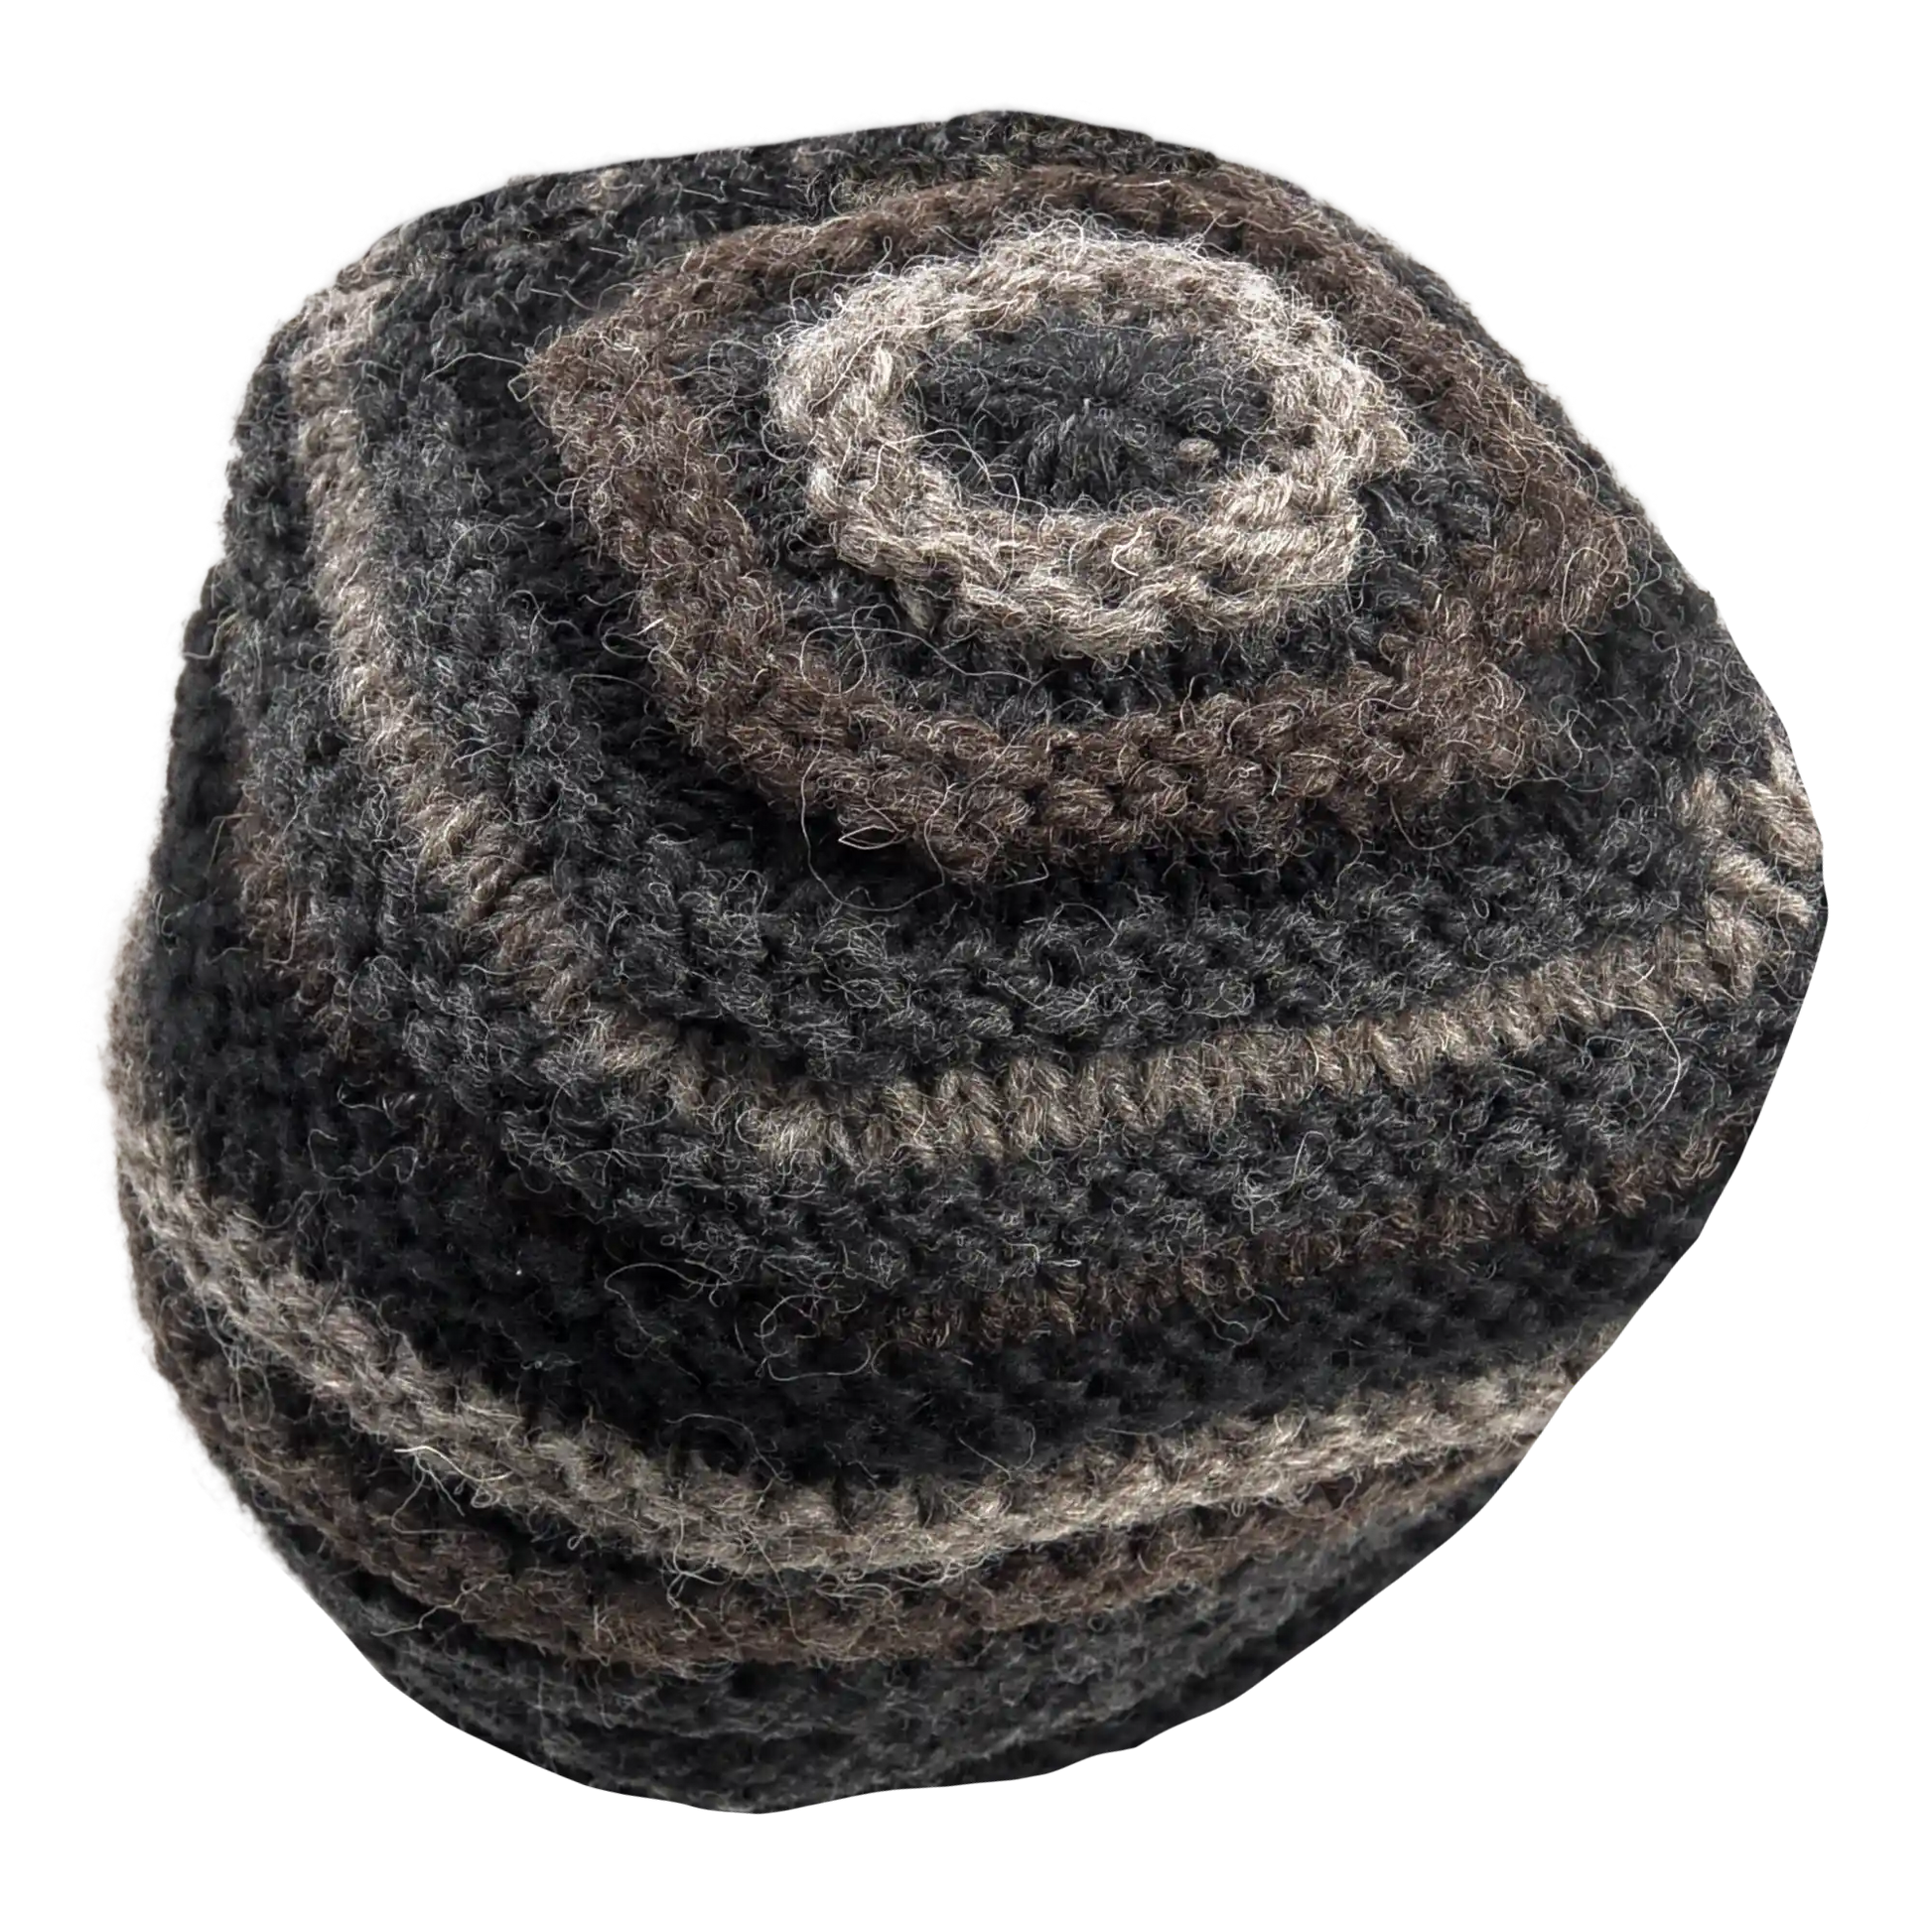 Rippenmütze, handgestrickte Wollmütze aus 100% Schurwolle mit farblich unterschiedlichem Rippenstrick. Rundgestrickt mit Volum. Schwarz, Grau, Braun.